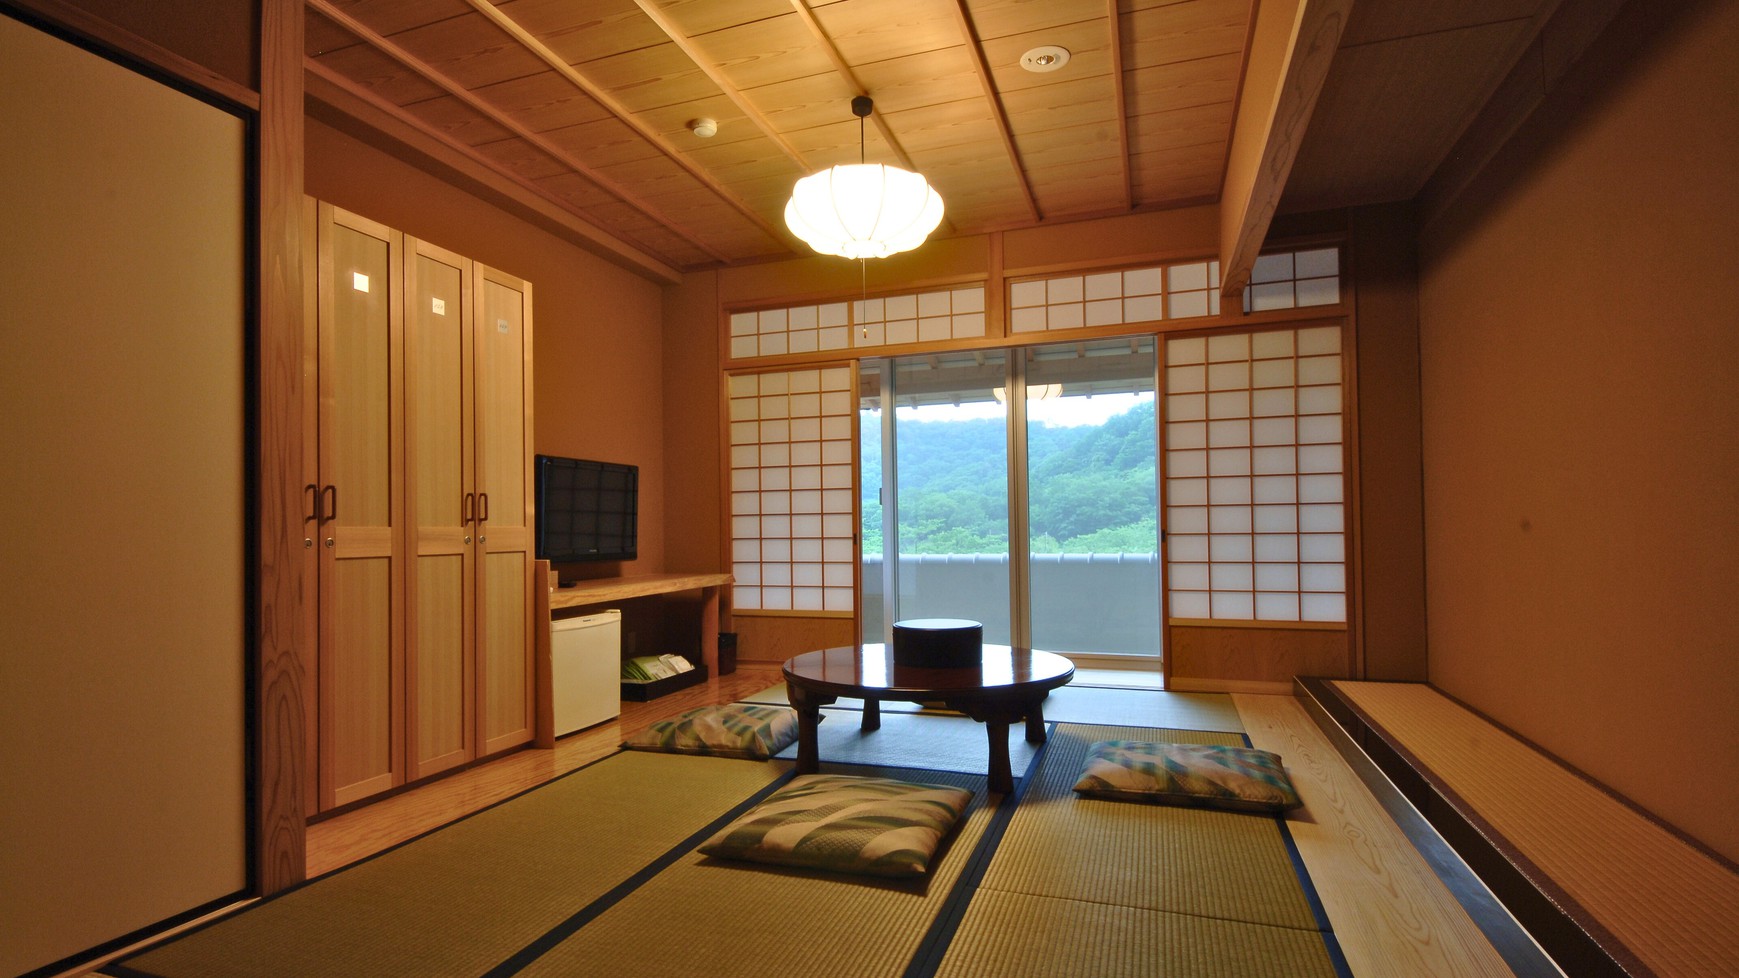 和室6〜8畳景観の良い純和風のお部屋です